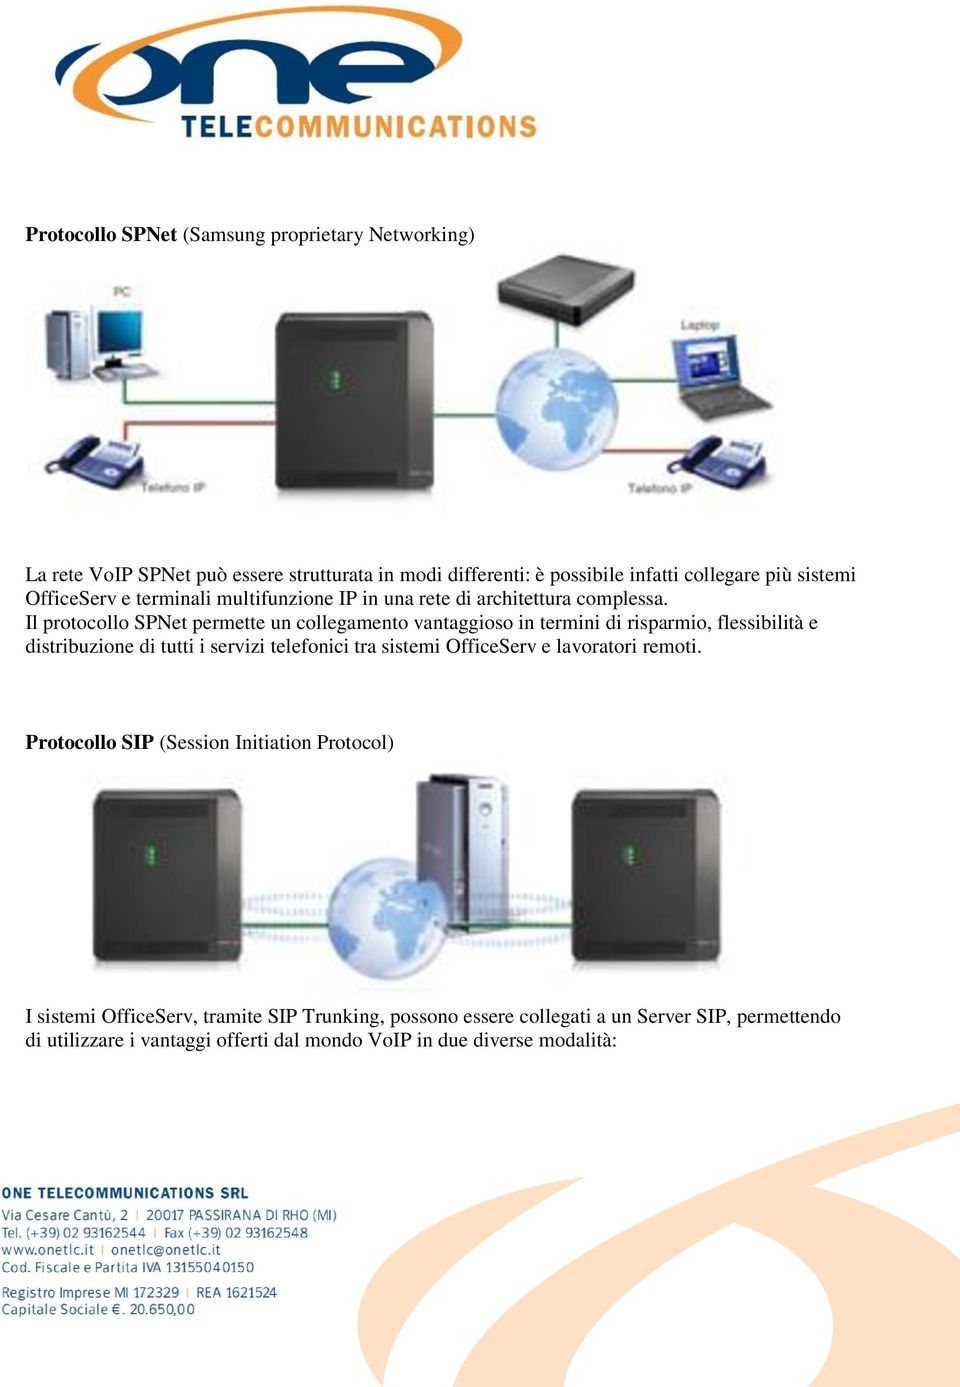 Il protocollo SPNet permette un collegamento vantaggioso in termini di risparmio, flessibilità e distribuzione di tutti i servizi telefonici tra sistemi